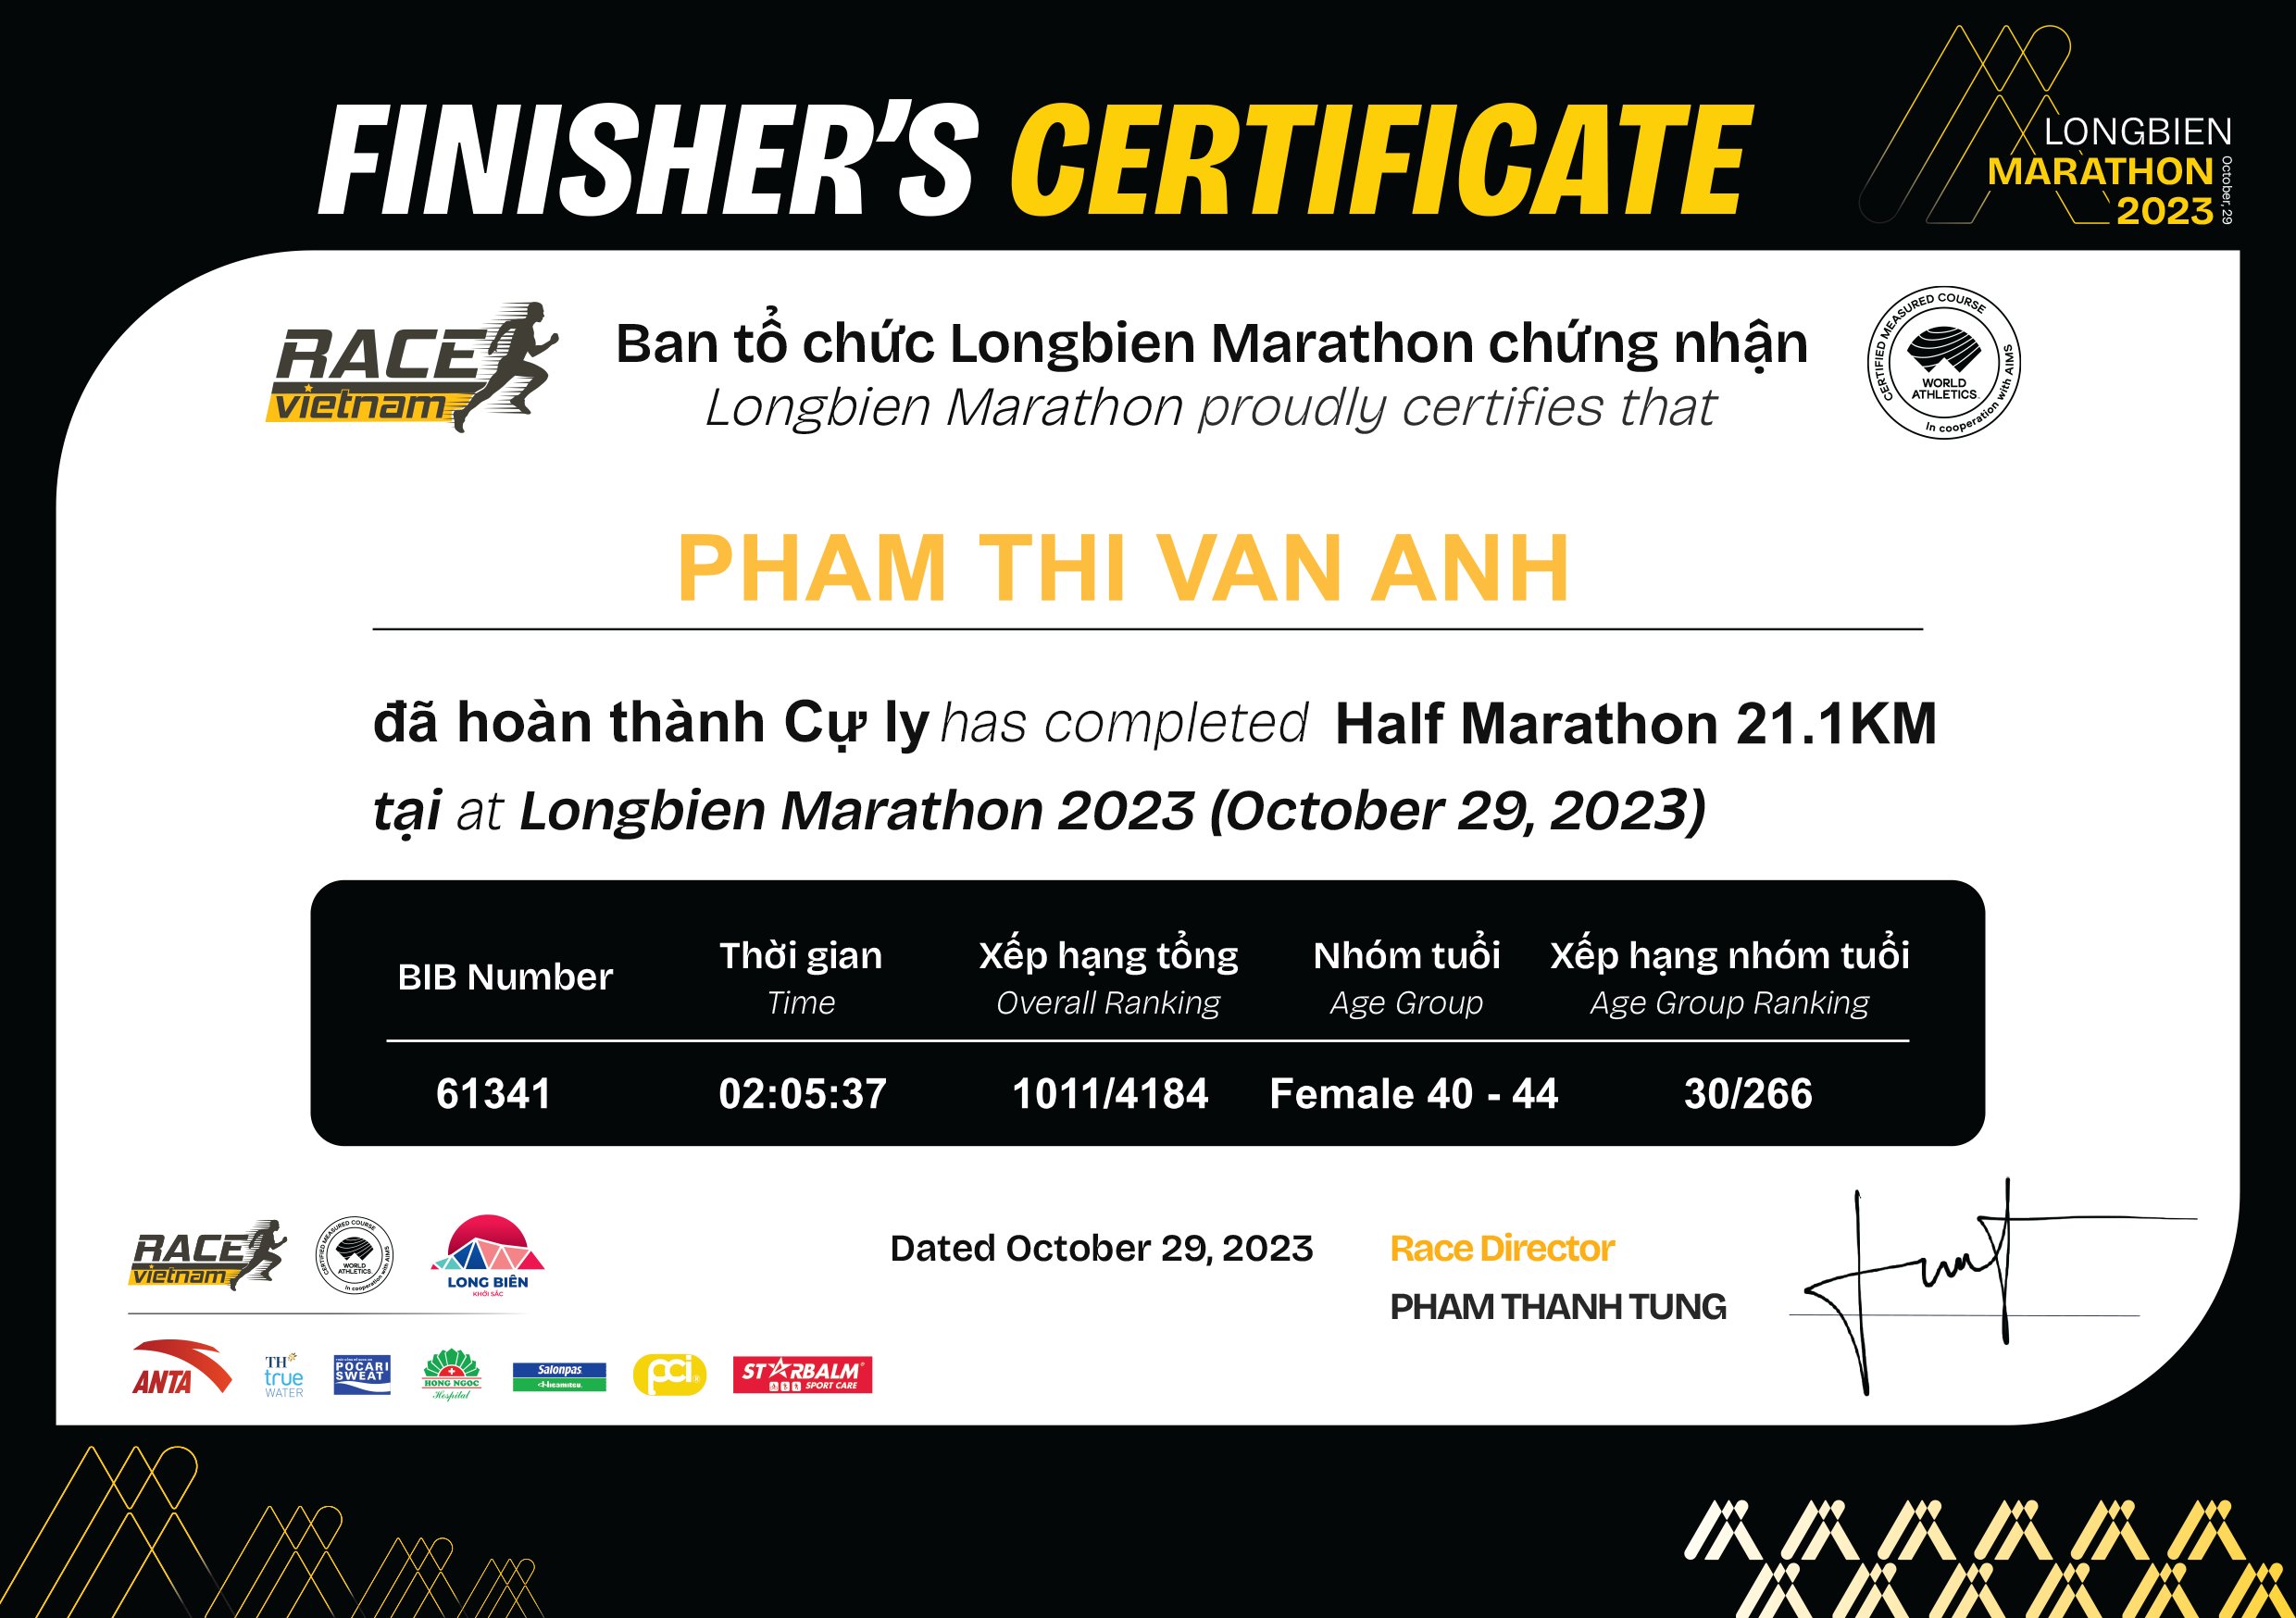 61341 - Pham Thi Van Anh